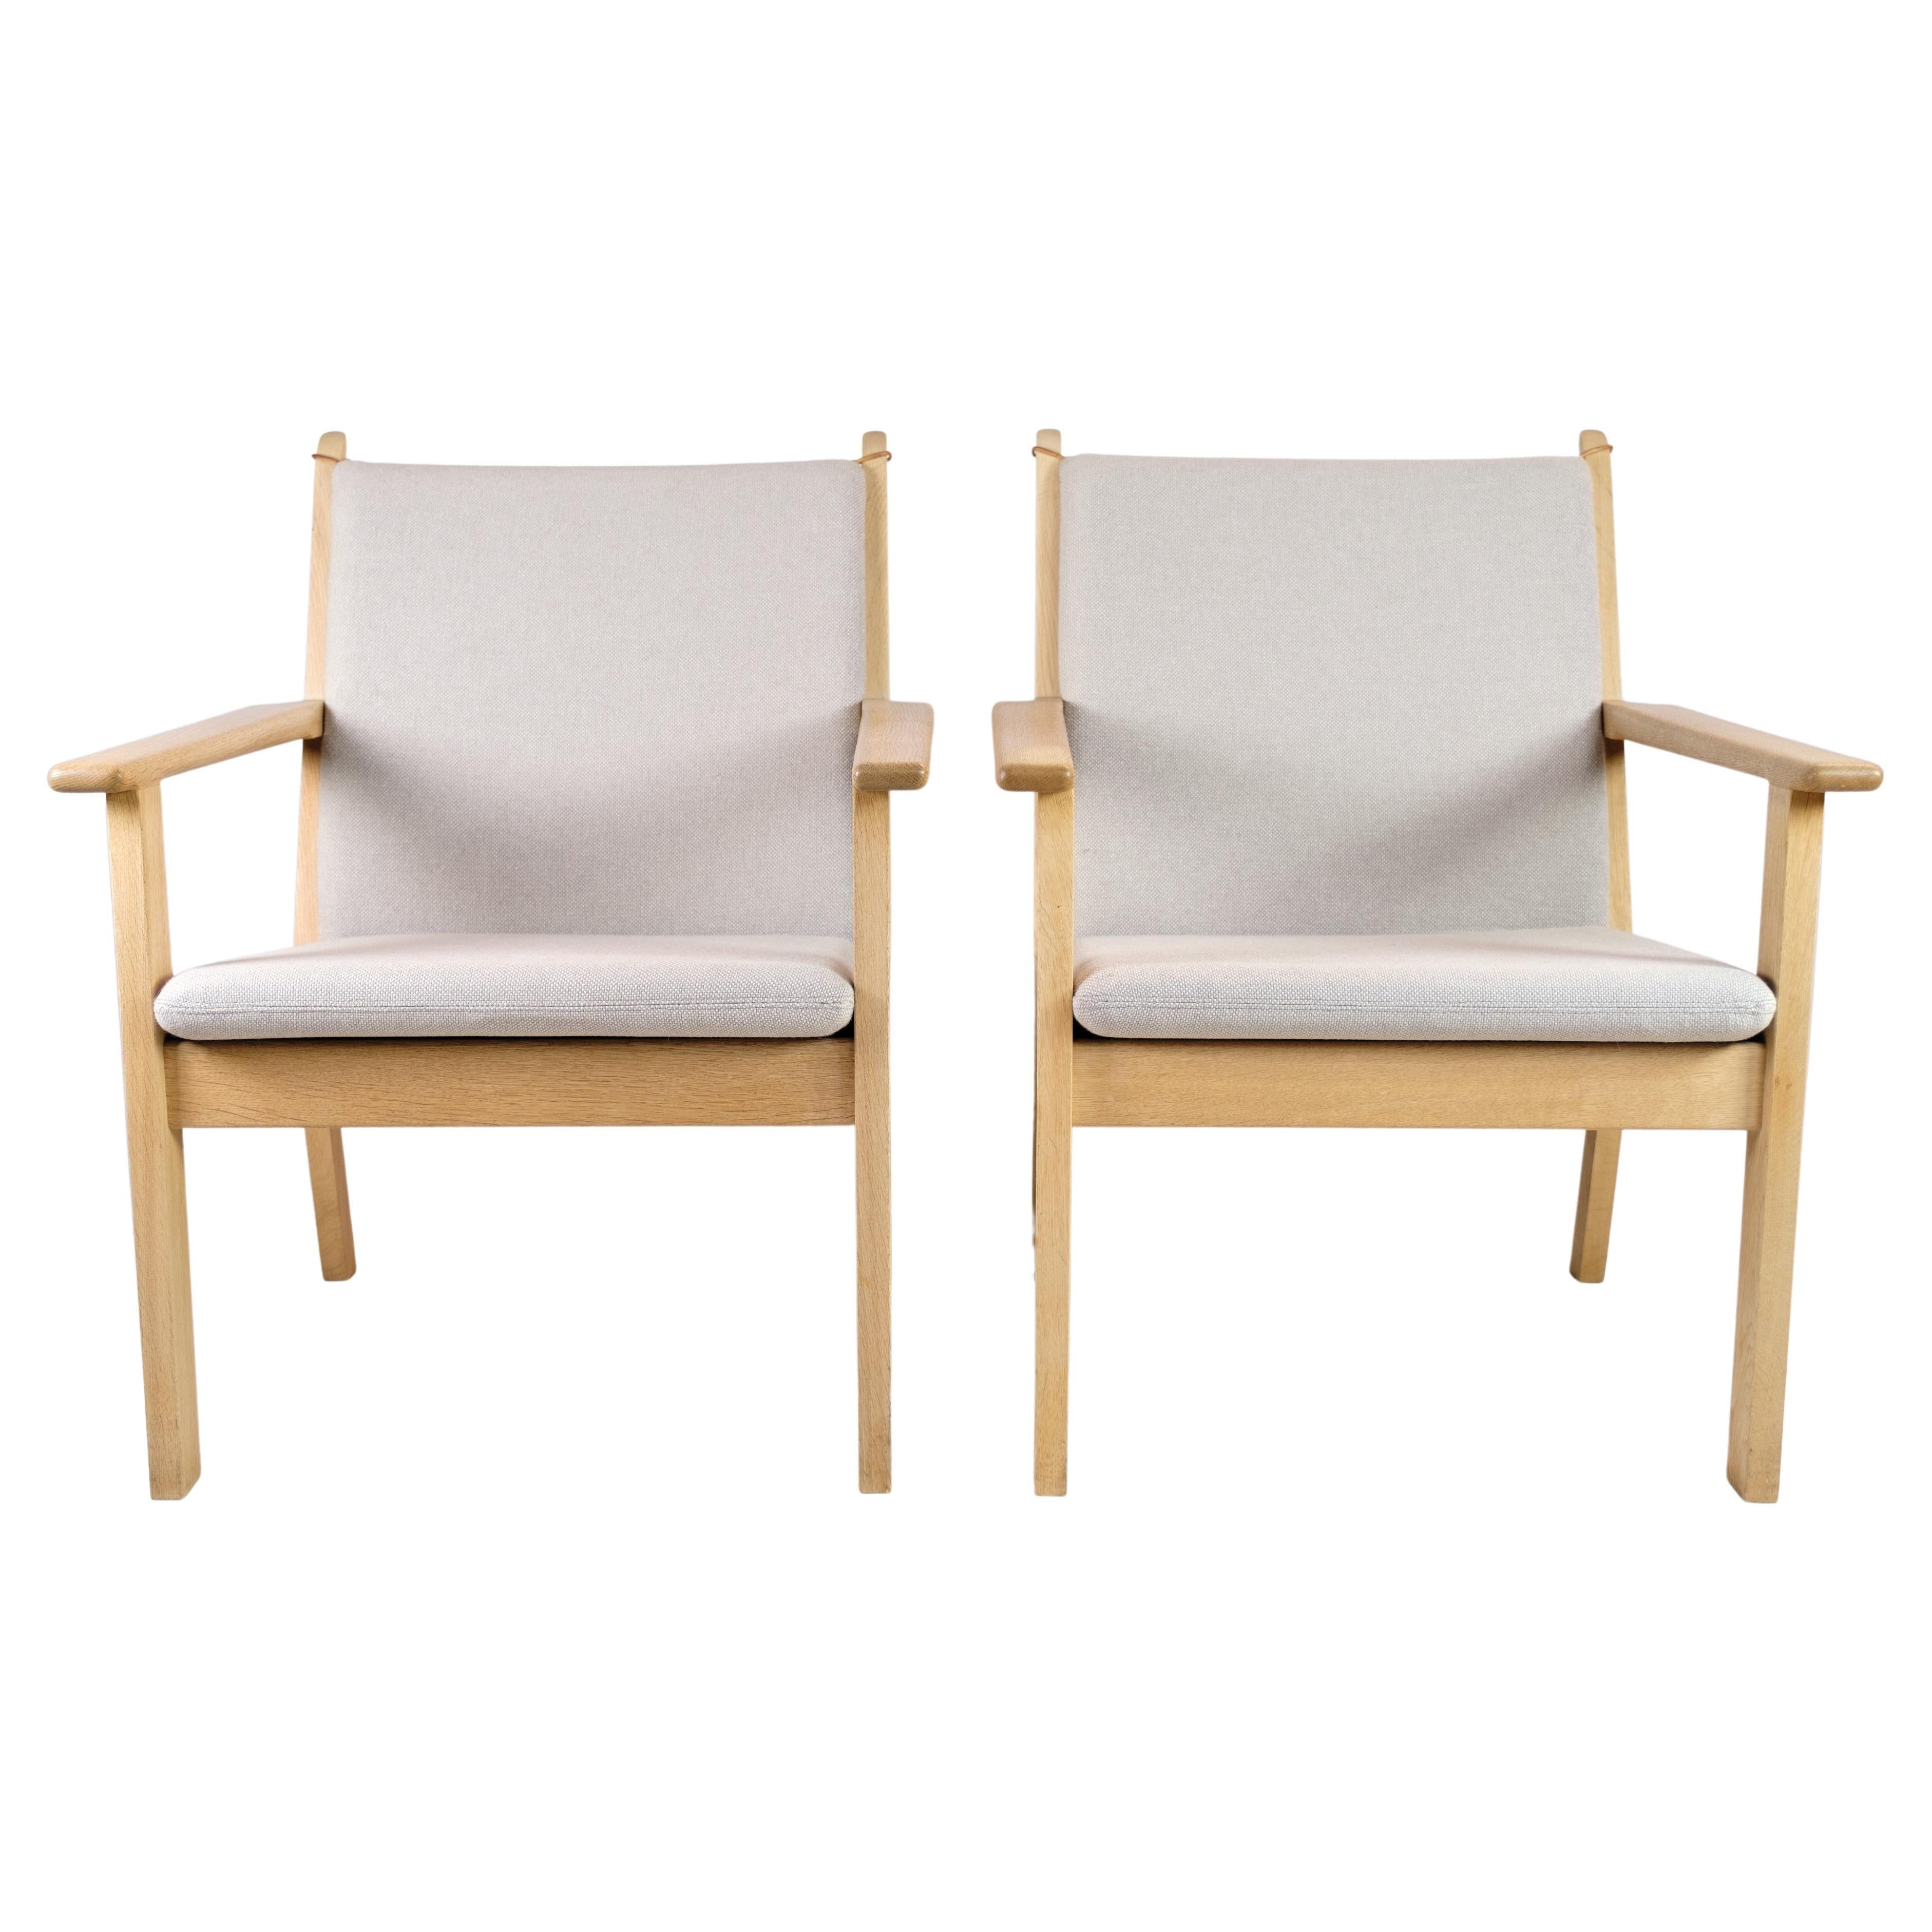 Ensemble de 2 fauteuils modèle Ge284 conçus par Hans J. Wegner et fabriqués par Getama en vente